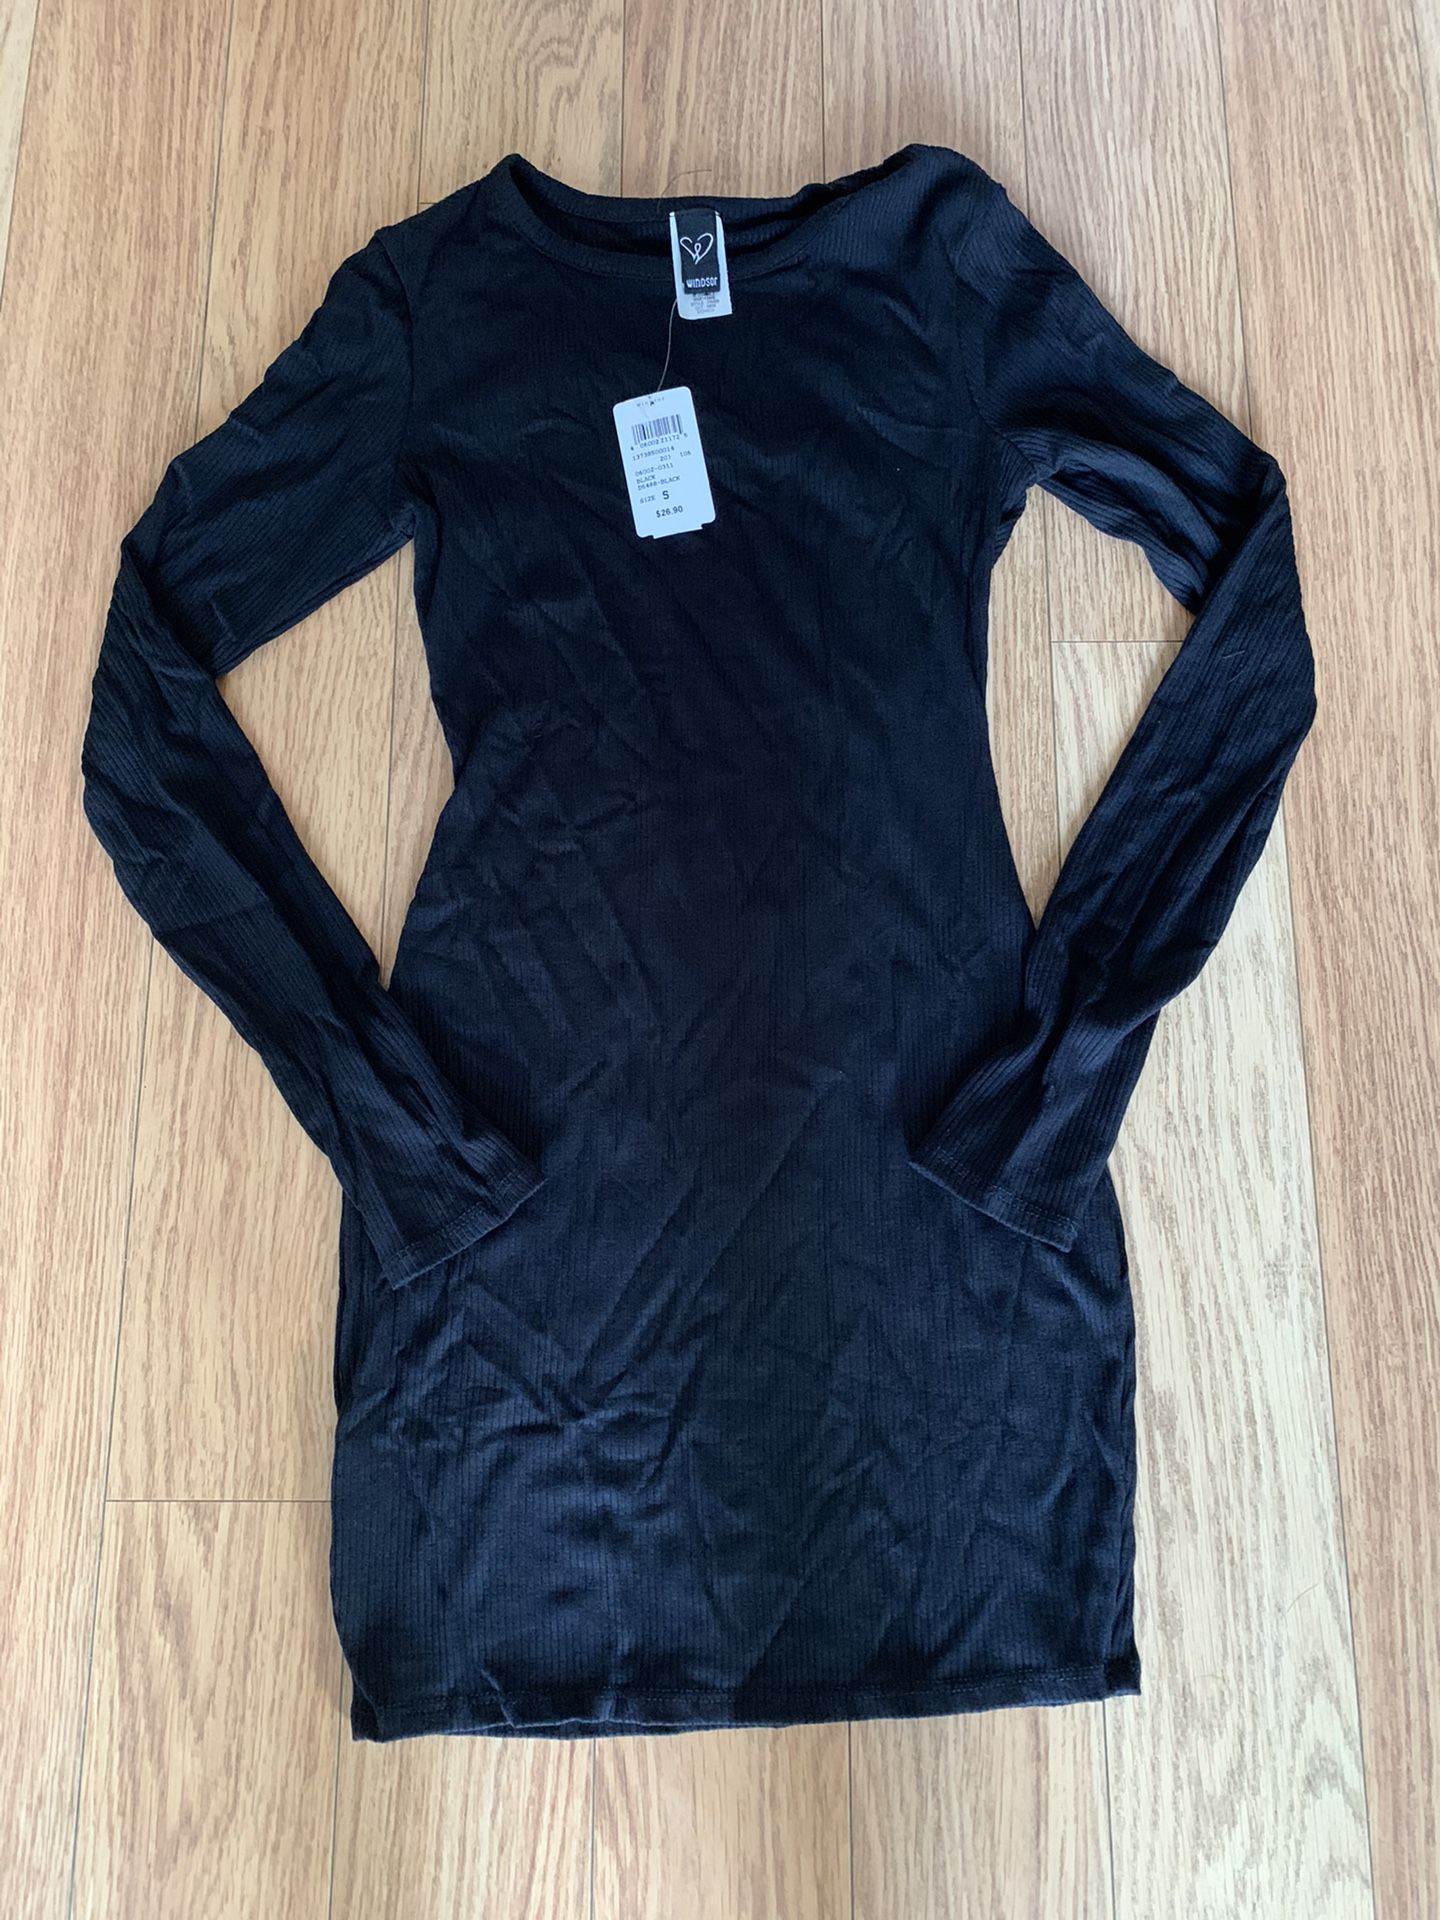 Windsor Knit Mini Dress (Black)